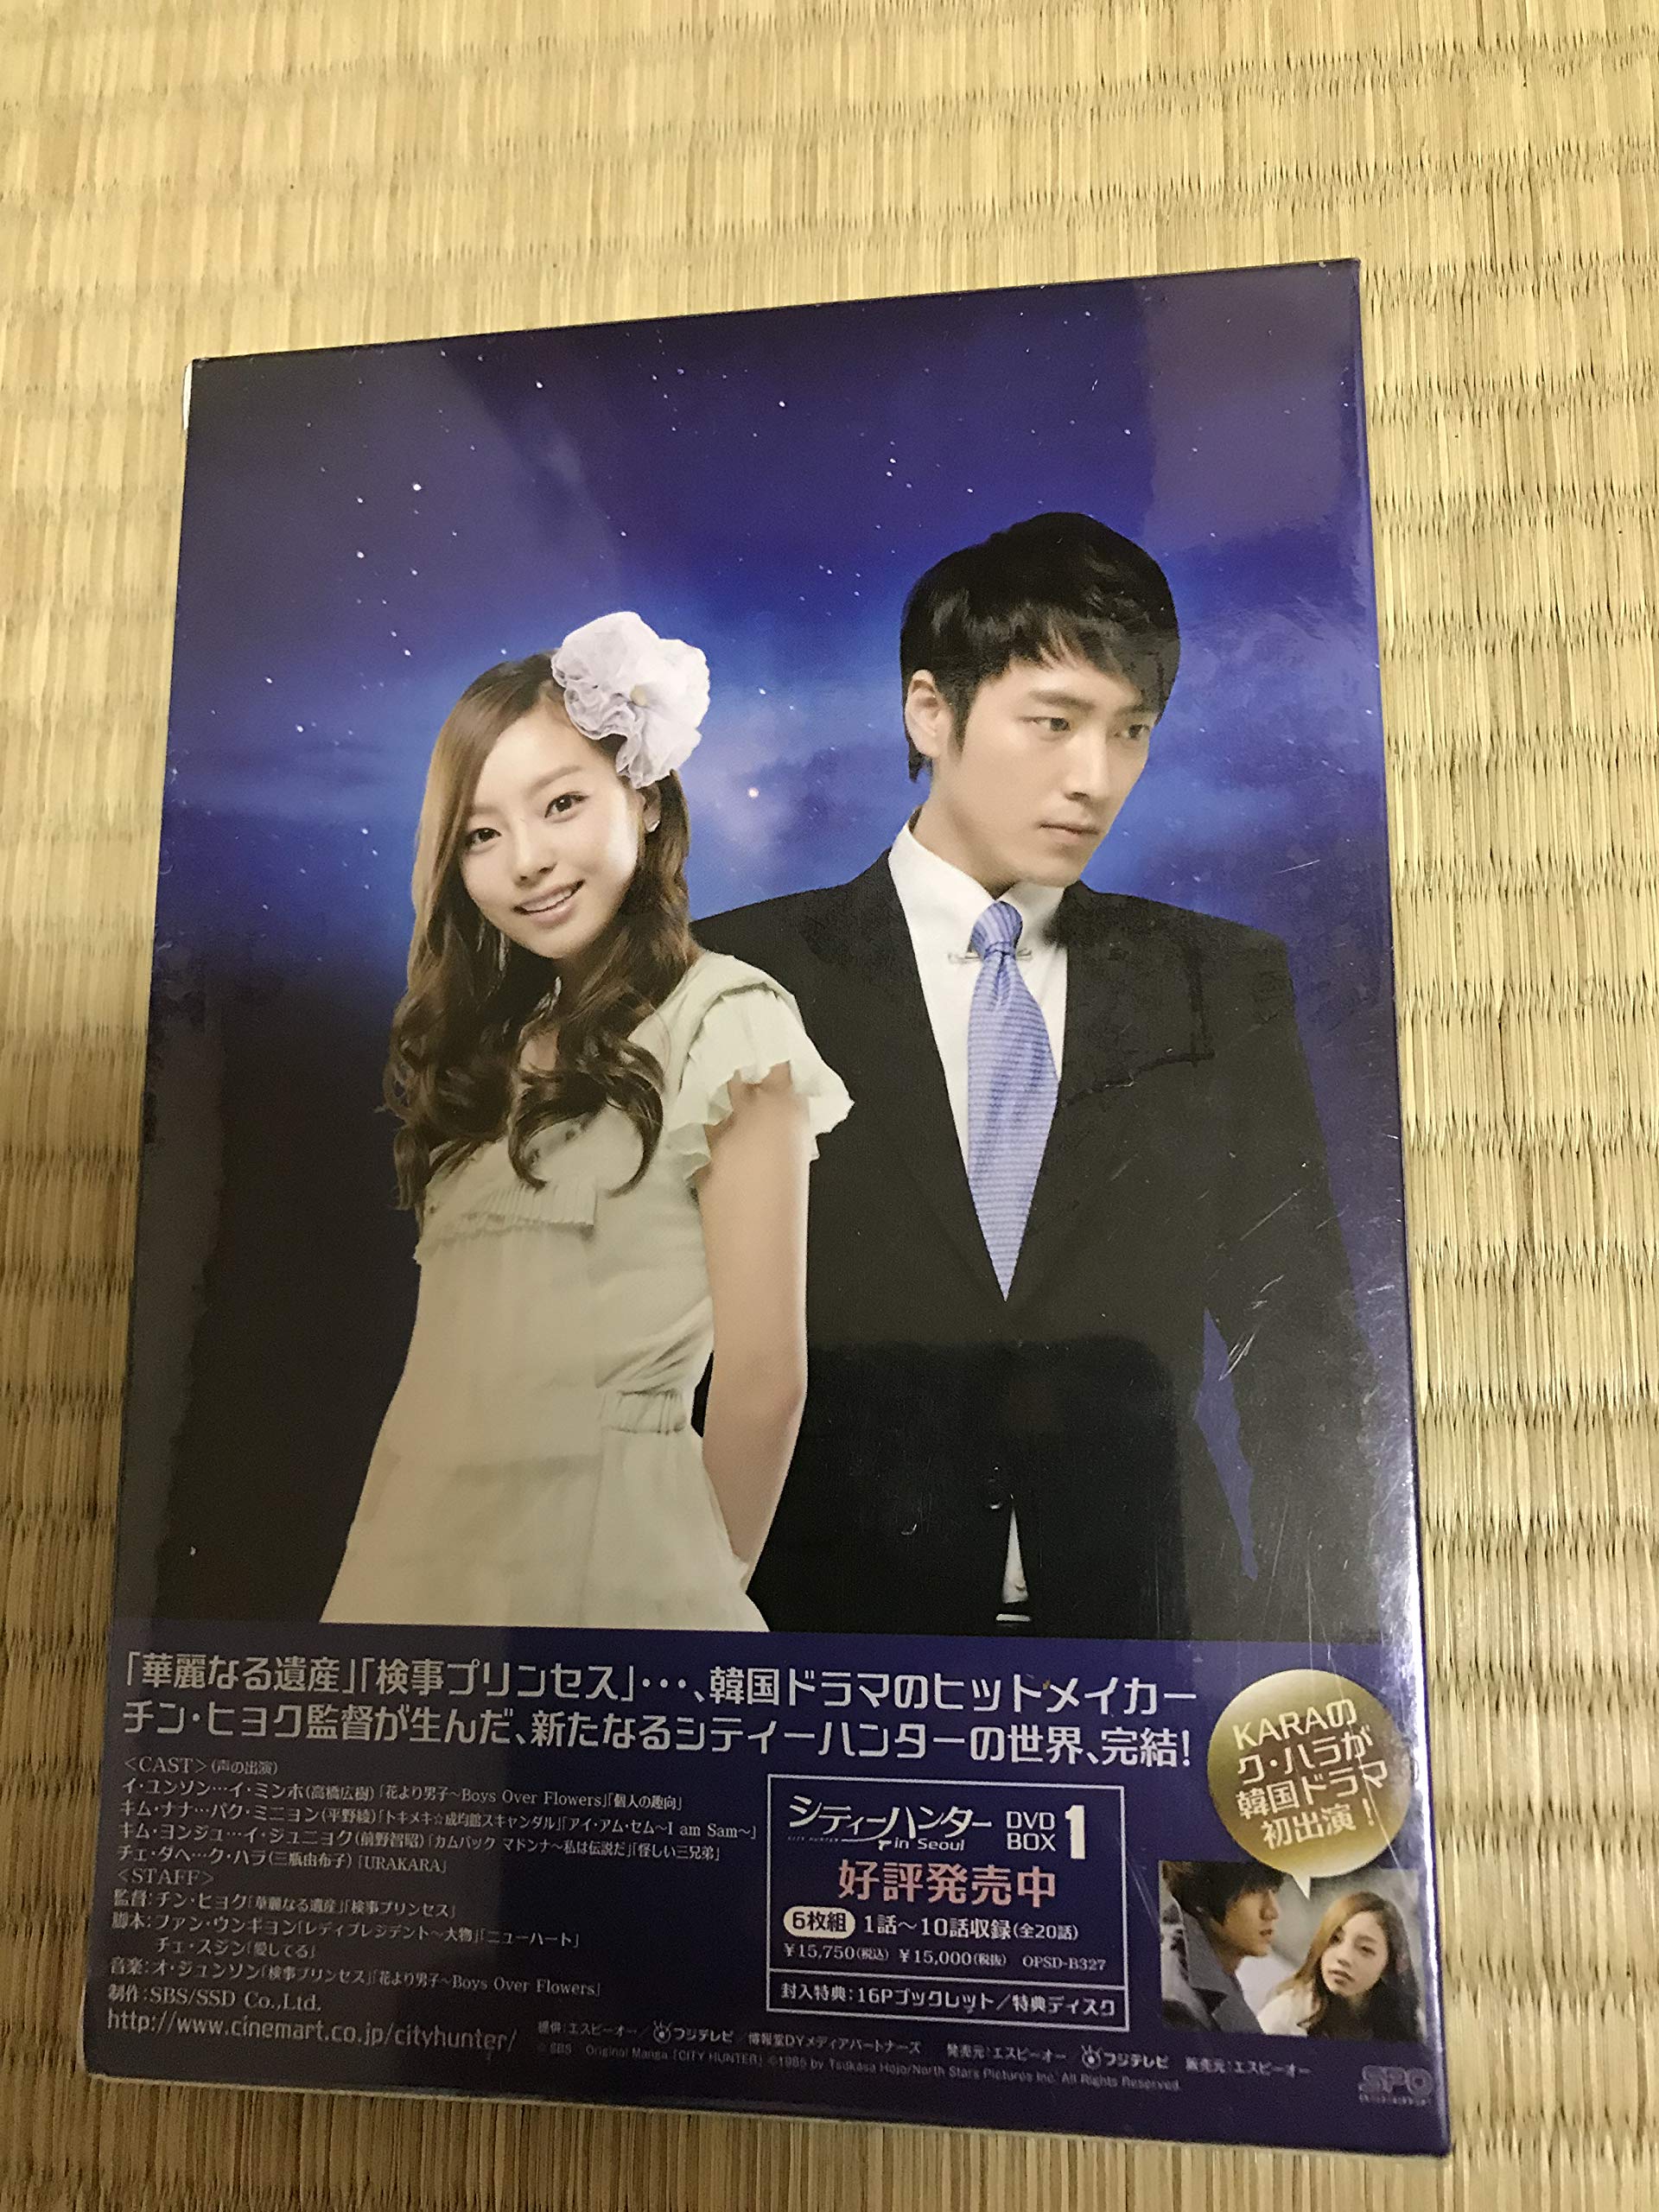 シティーハンター in Seoul DVD-BOX1.2 イ・ミンホ イミンホ - DVD 